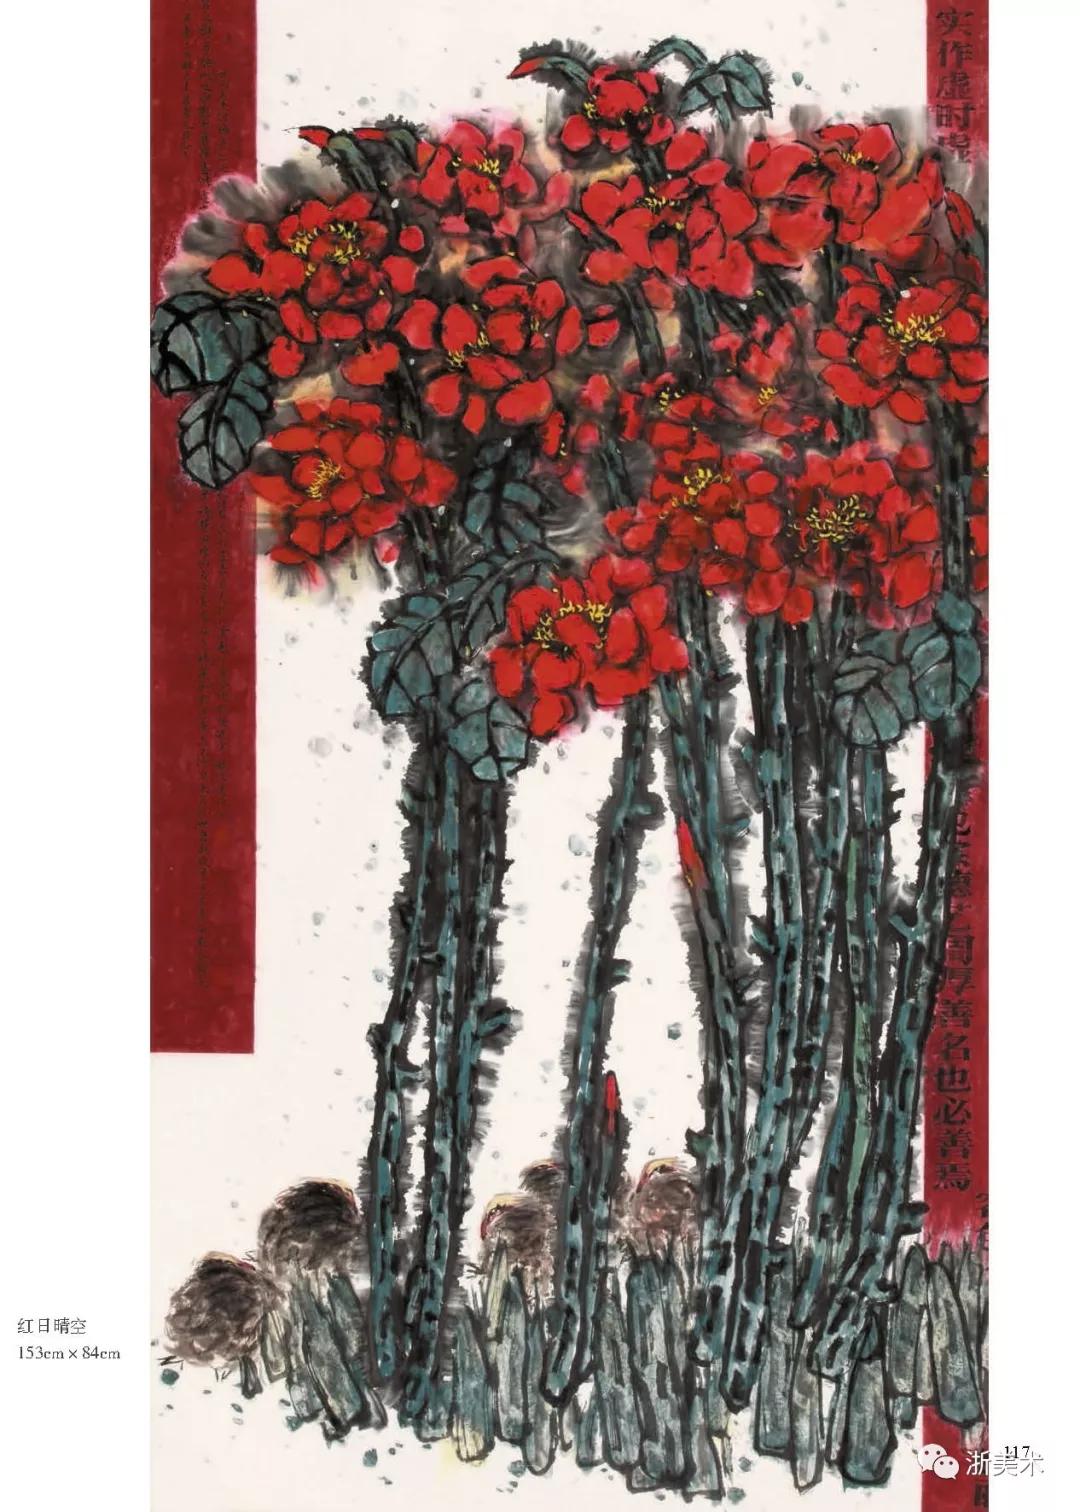 【展讯】大吉庭器·国色篇—芮顺淦牡丹画展